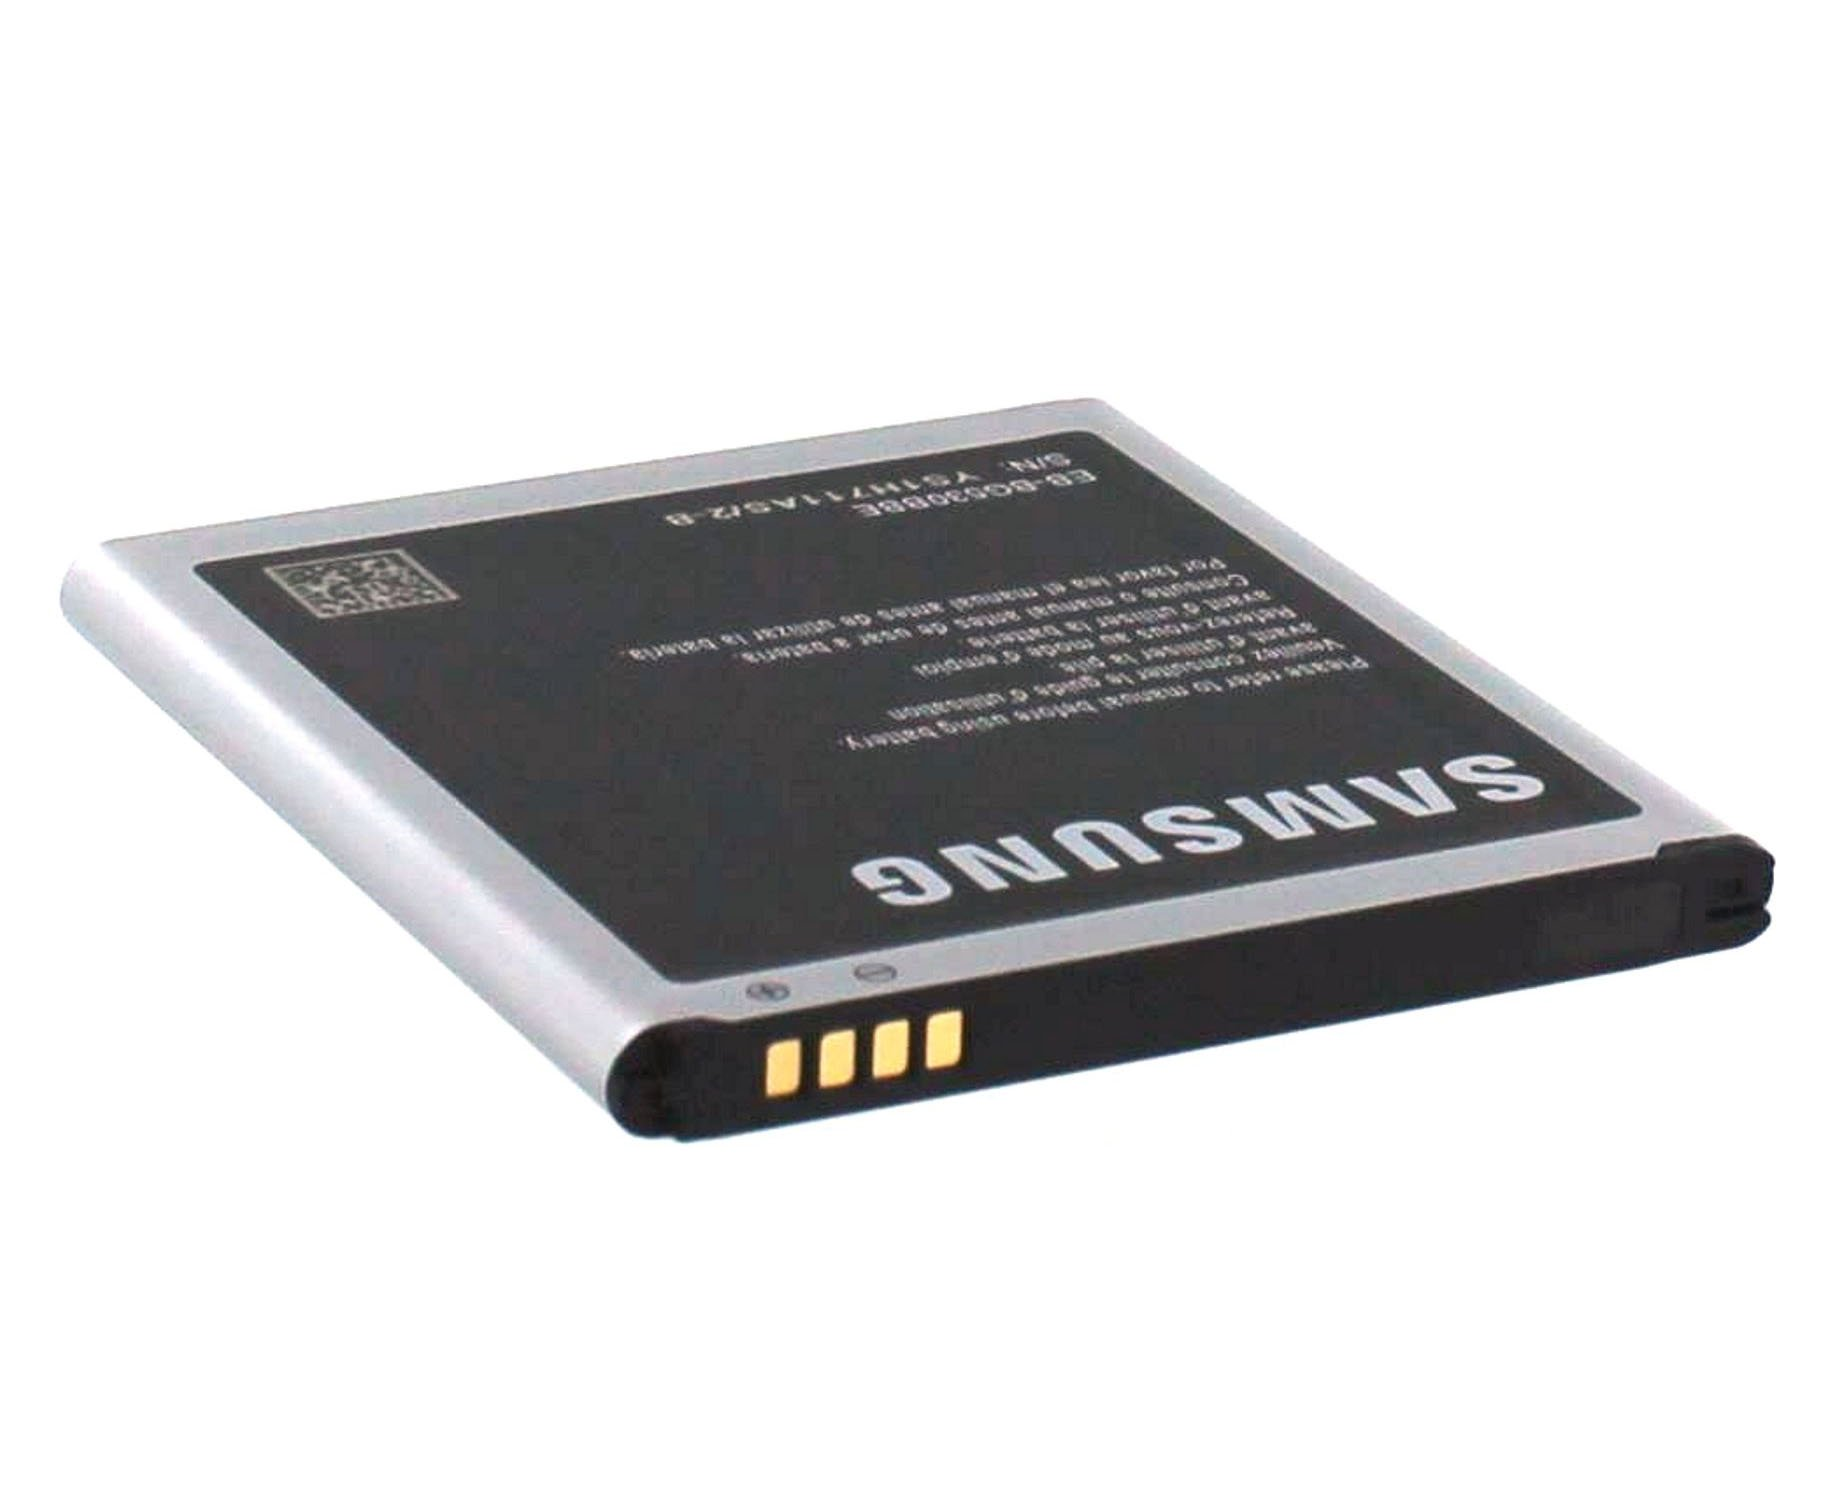 Li-Ion Samsung Akku für Handy-/Smartphoneakku, SM-G530FZ mAh Grand Galaxy 3.8 Li-Ion, SAMSUNG Original Volt, Prime 2600